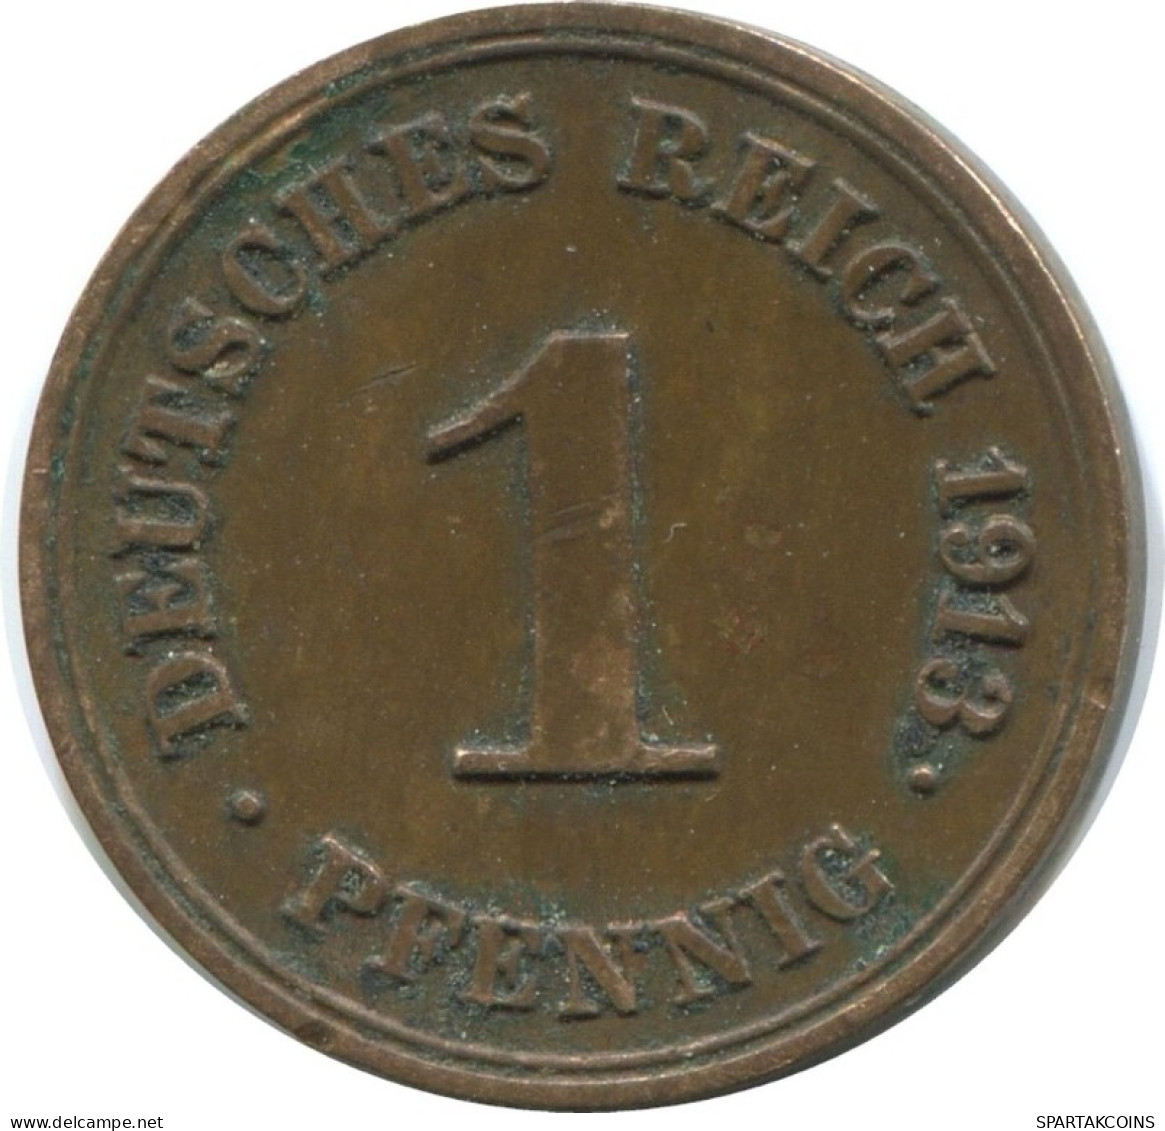 1 PFENNIG 1913 G ALEMANIA Moneda GERMANY #AD446.9.E.A - 1 Pfennig